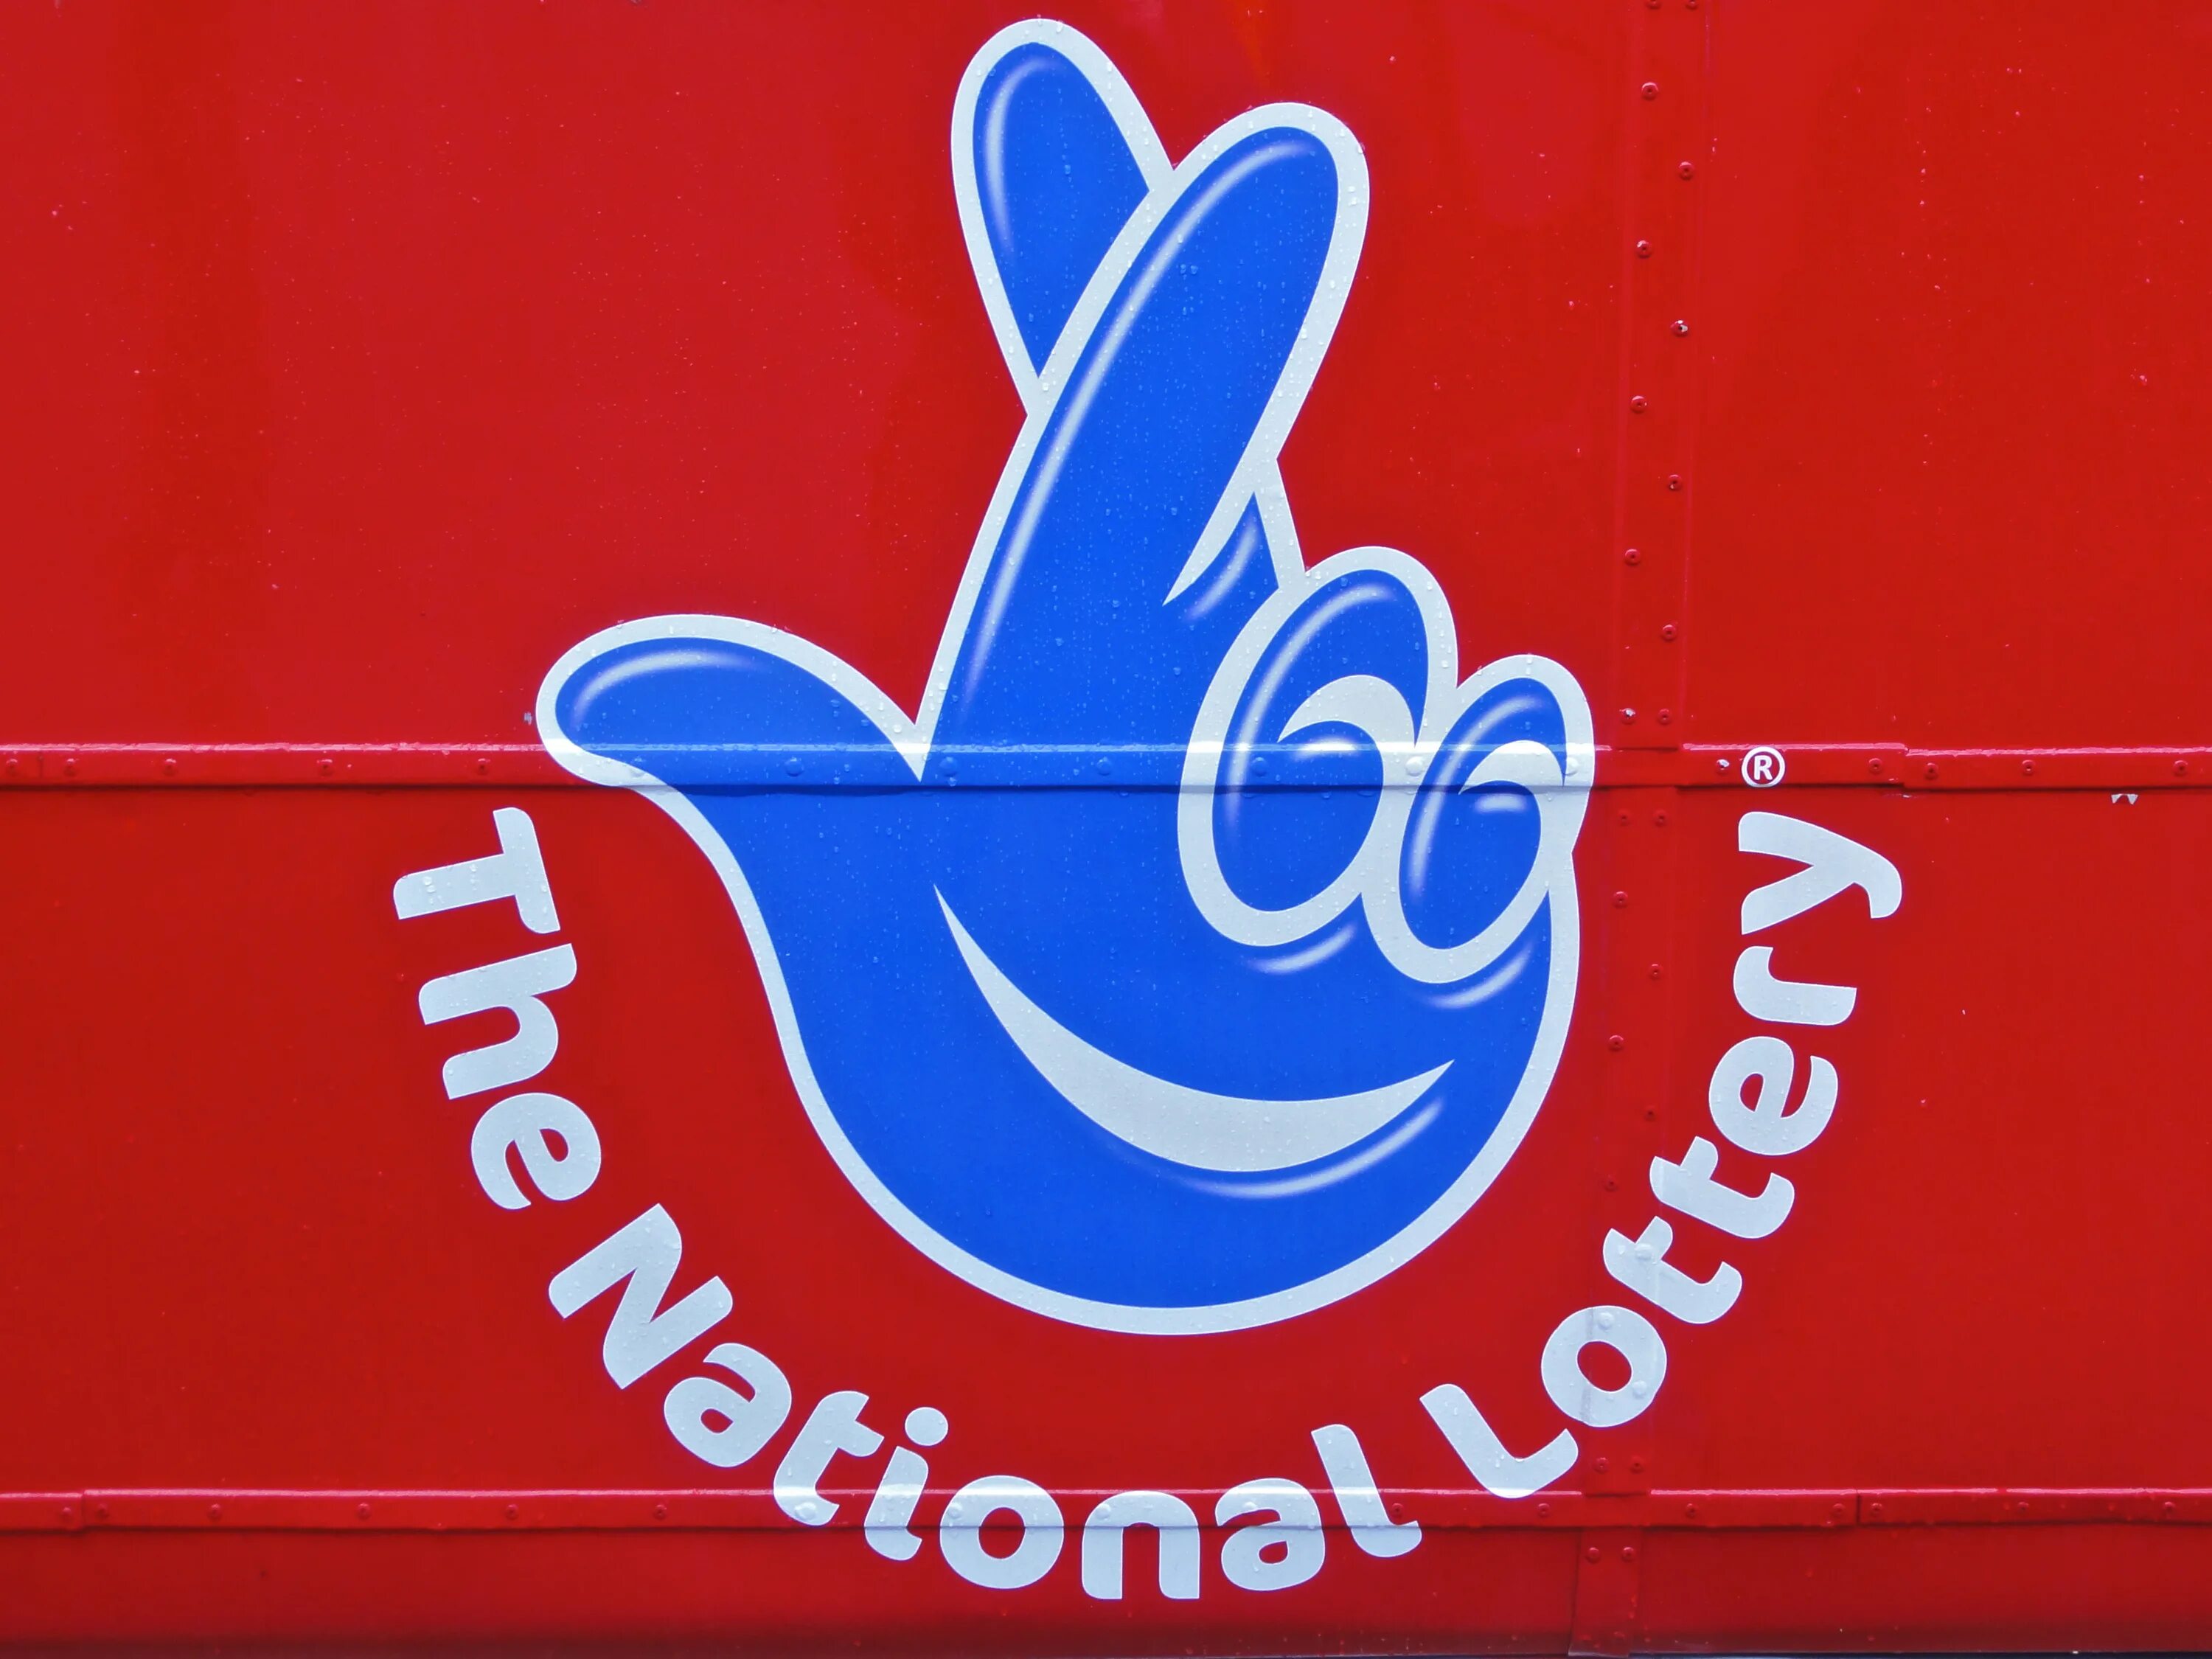 Национальная лотерея 75. Национальная лотерея. Британская Национальная лотерея. Национальная лотерея лого. Логотип британской лотереи.